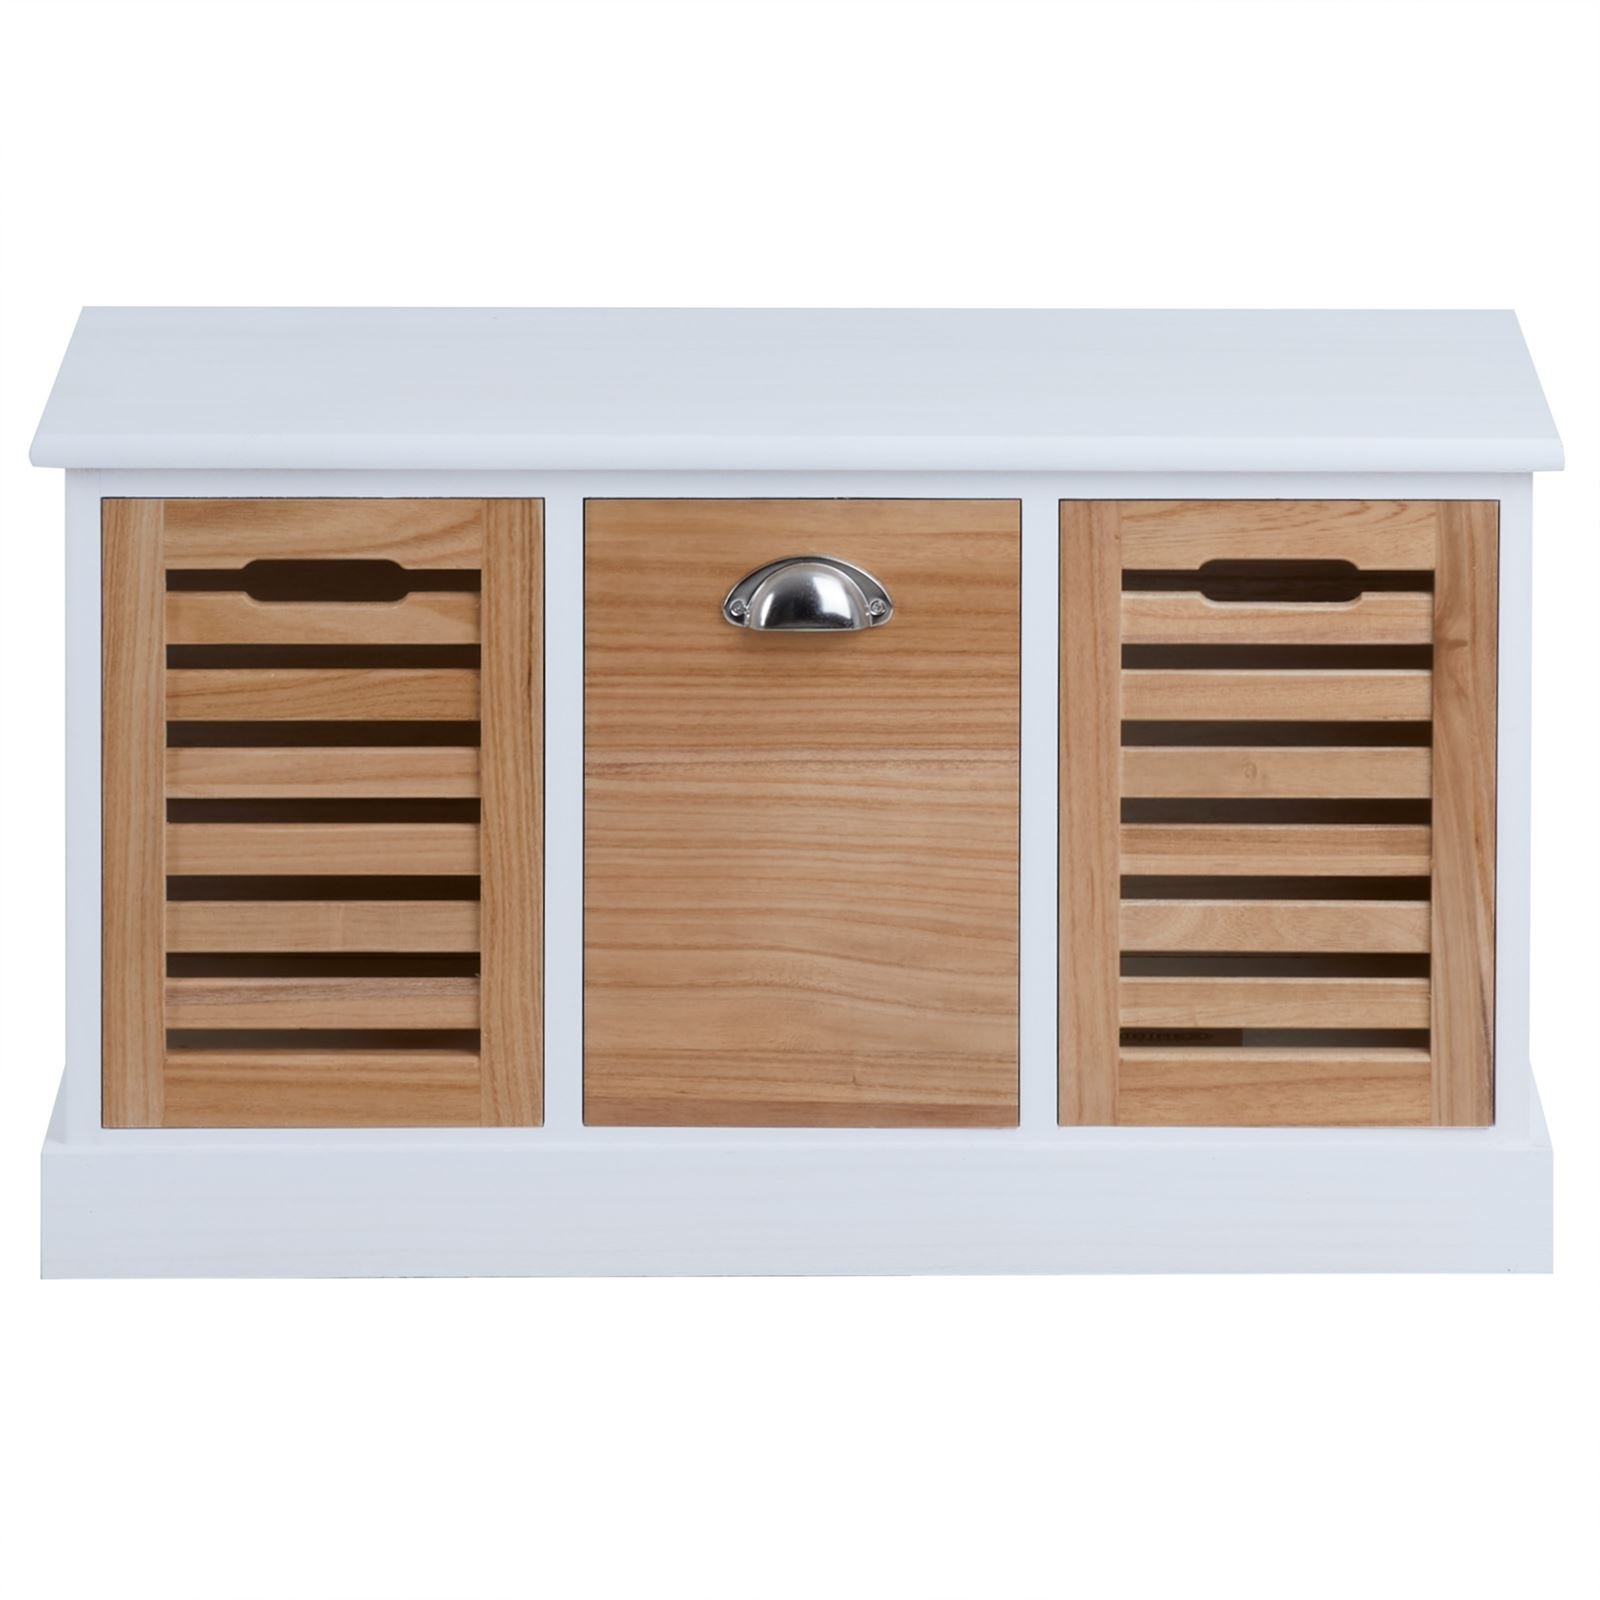 Boîte de rangement tiroir ou carré, blanc ou aspect bois